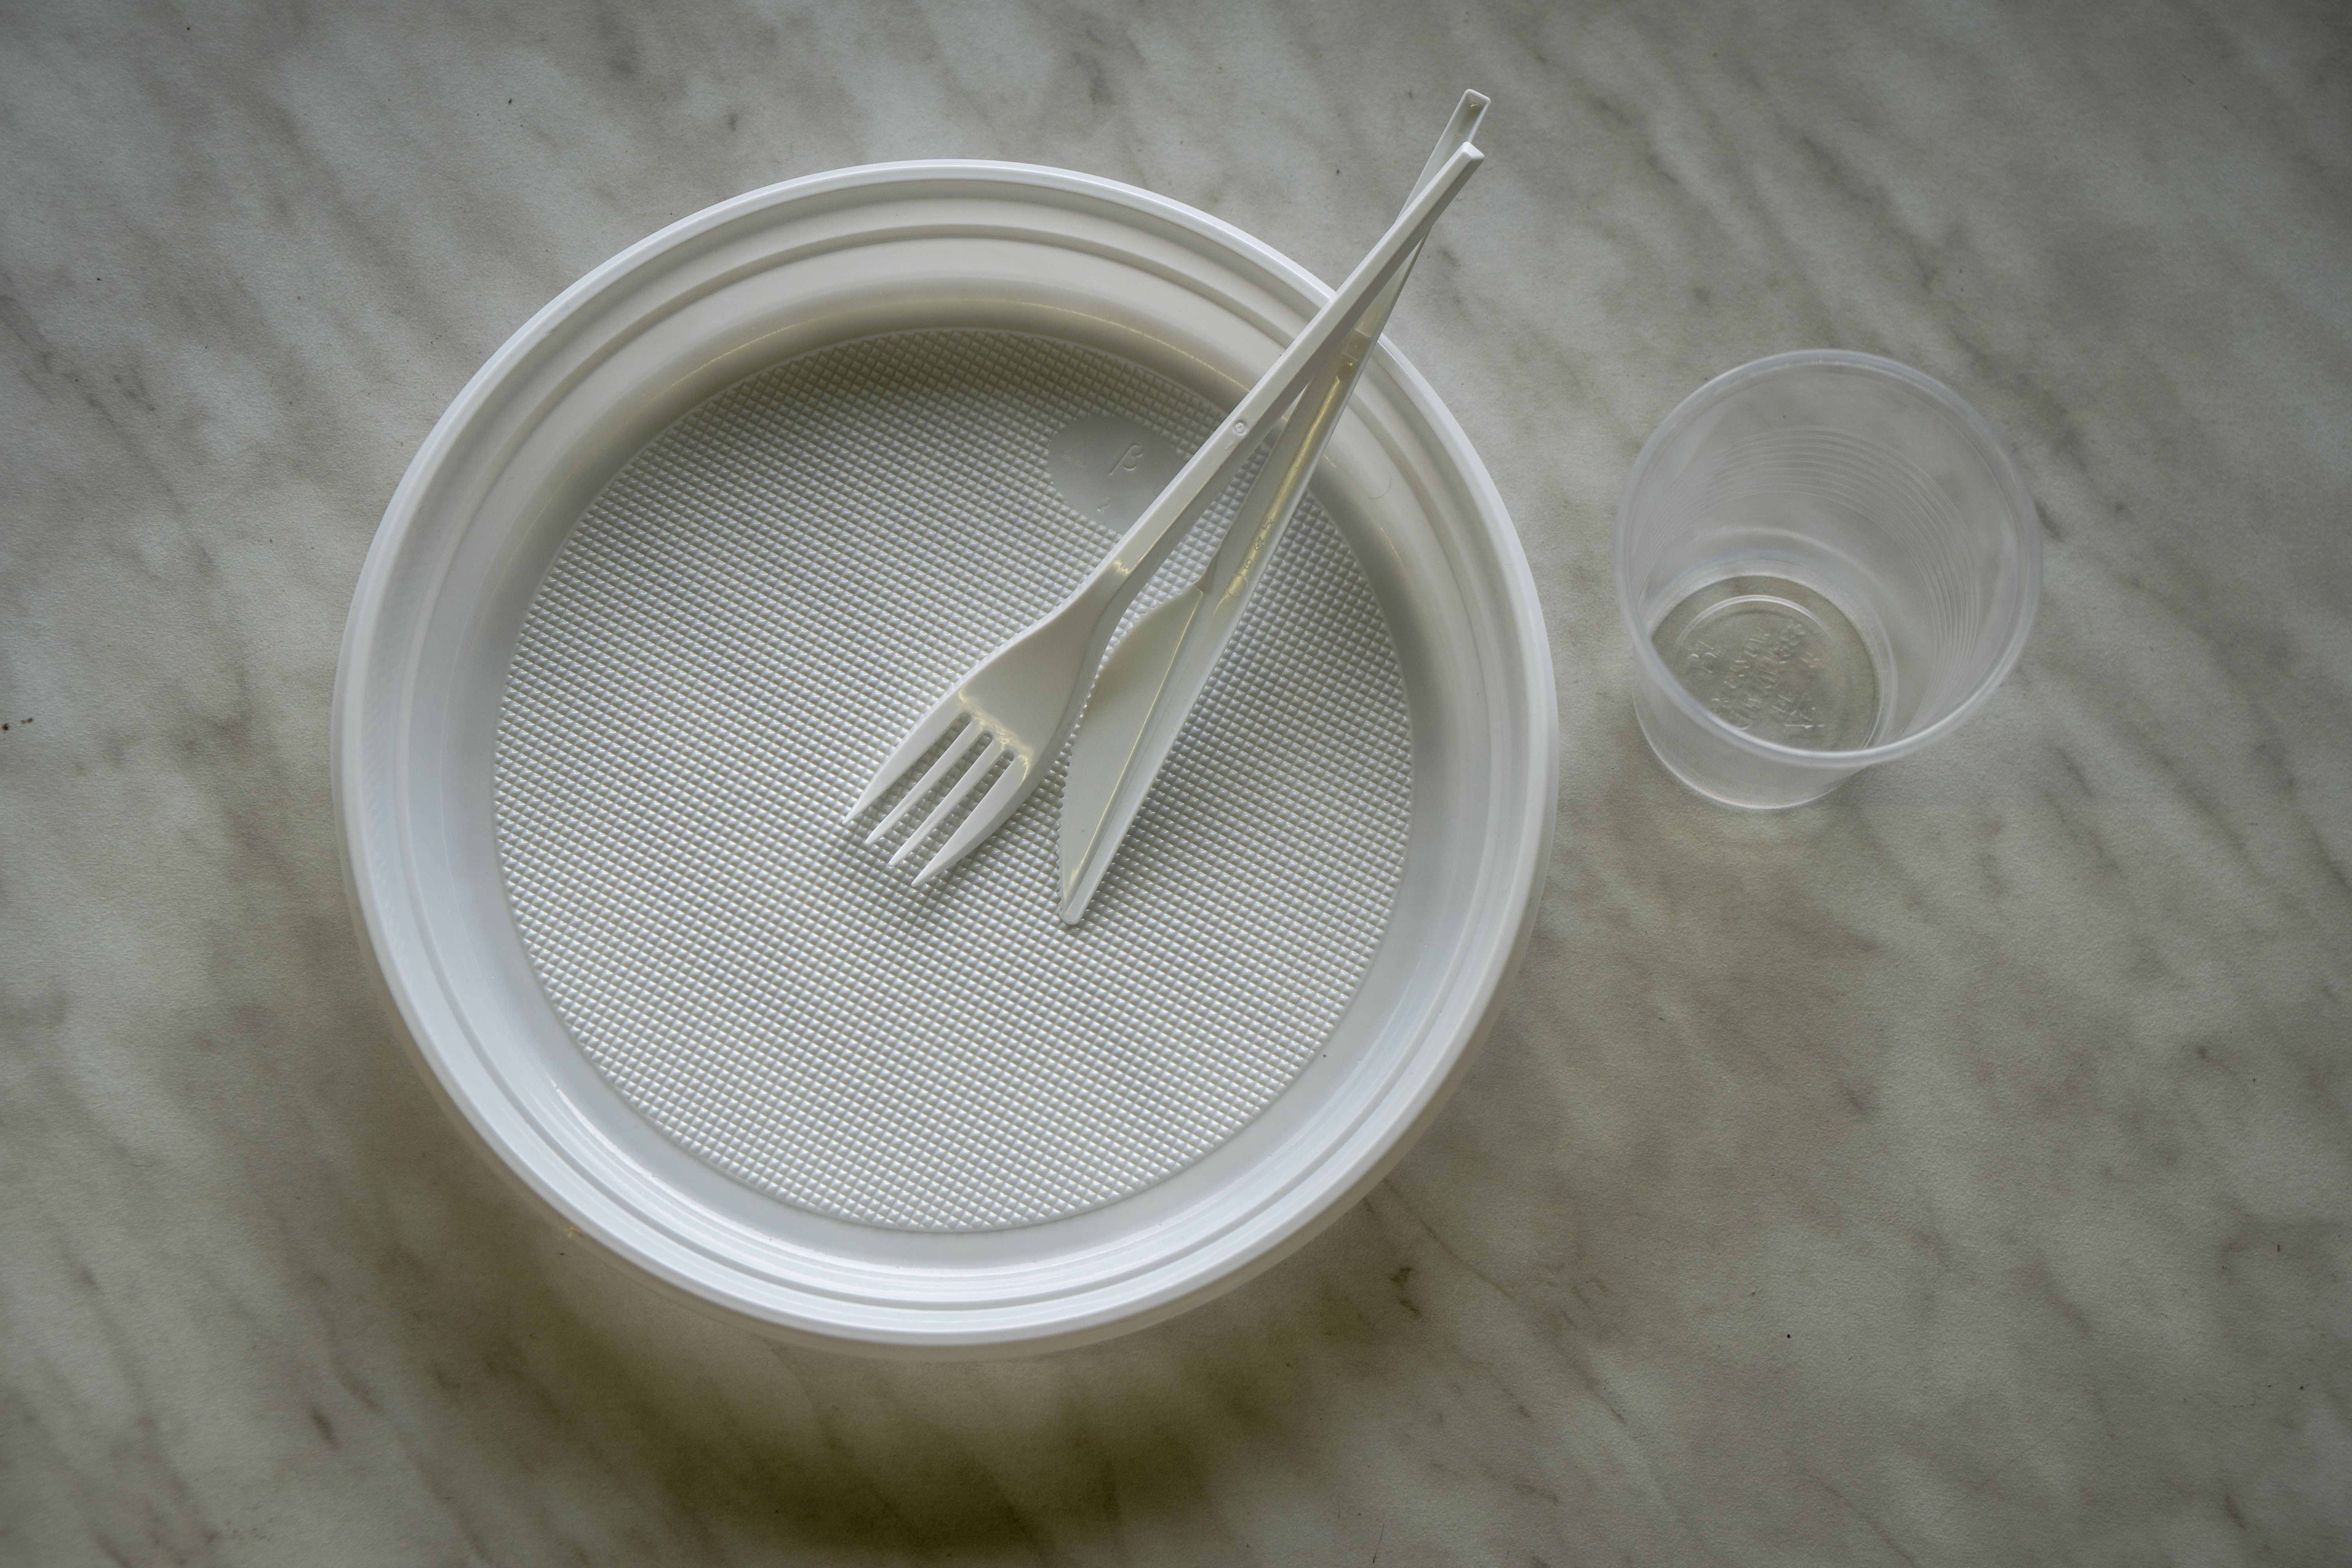 Глава Минприроды сообщил о планах ограничить продажу пластиковой посуды